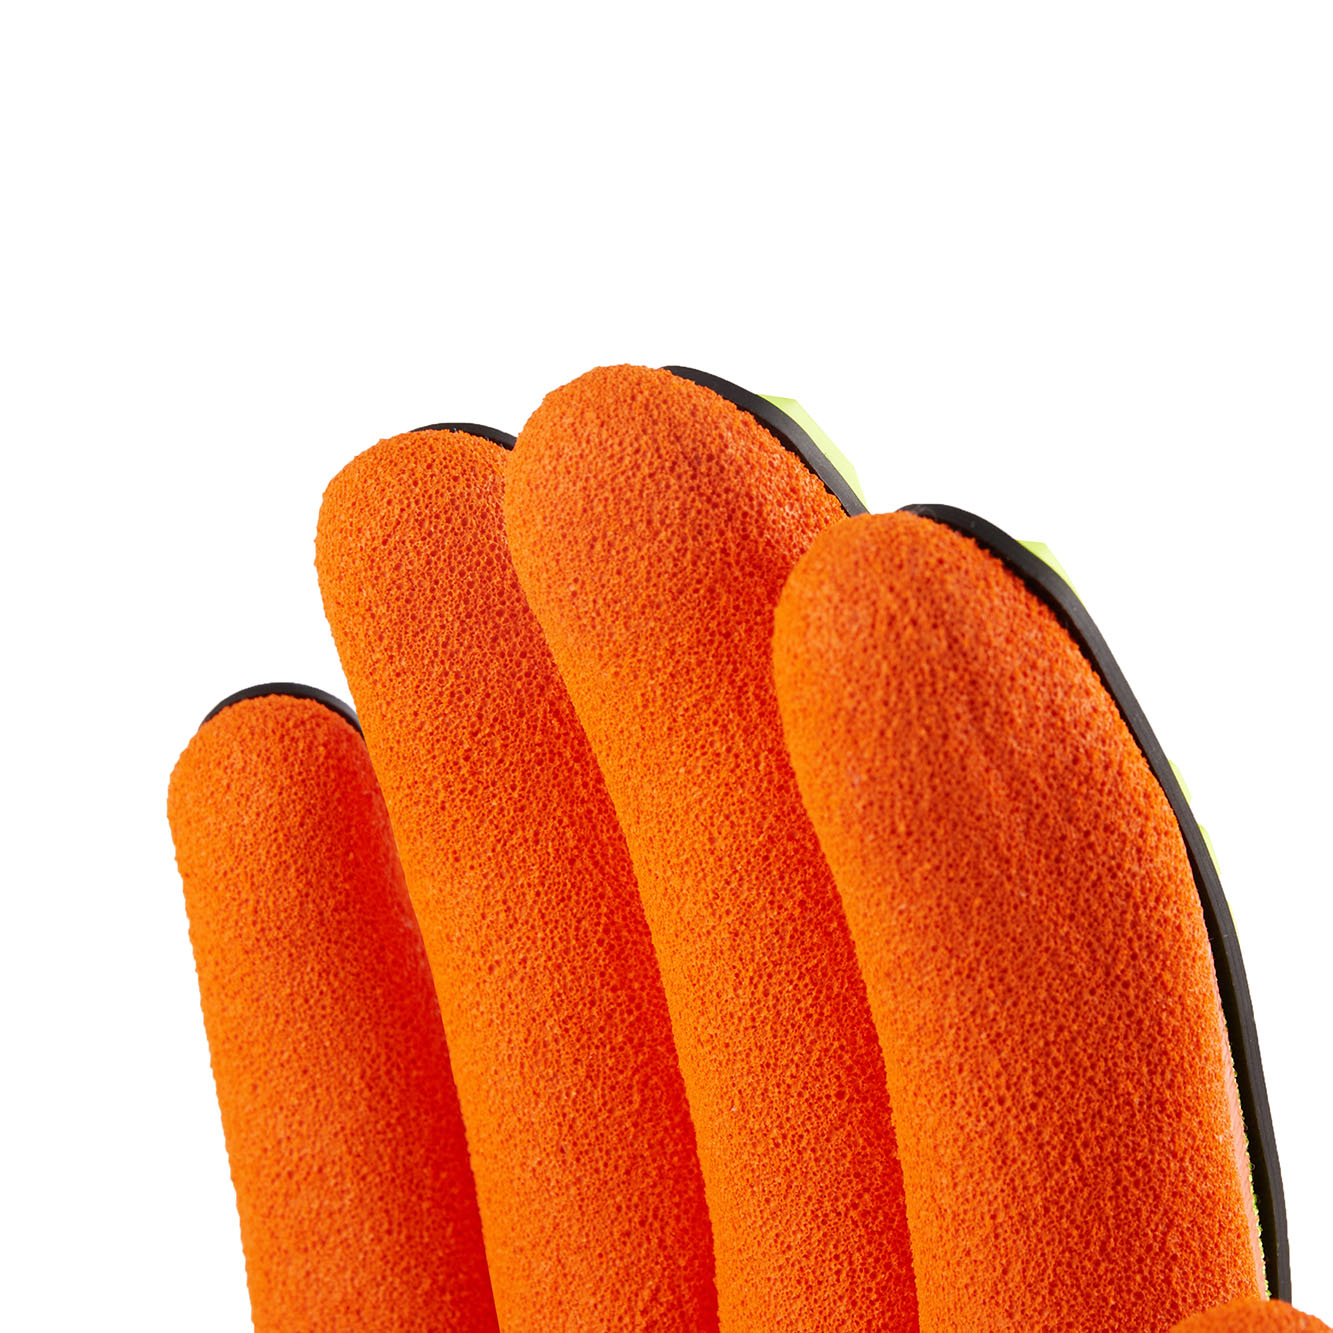 wXw-Rizcut-3 Cut Resistance Gloves - WorkXwear